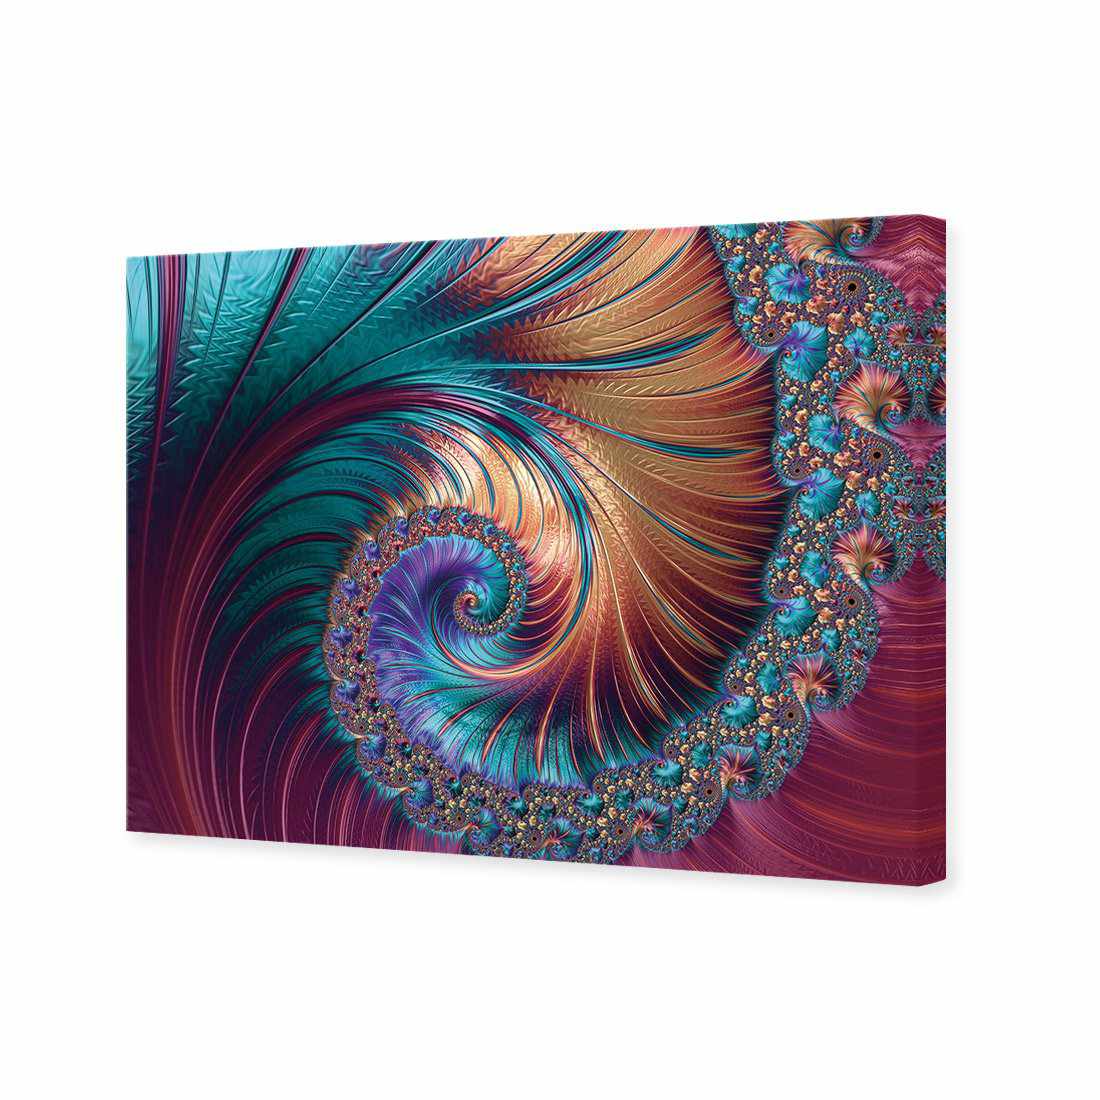 Luxe Spiral Canvas Art-Canvas-Wall Art Designs-45x30cm-Canvas - No Frame-Wall Art Designs